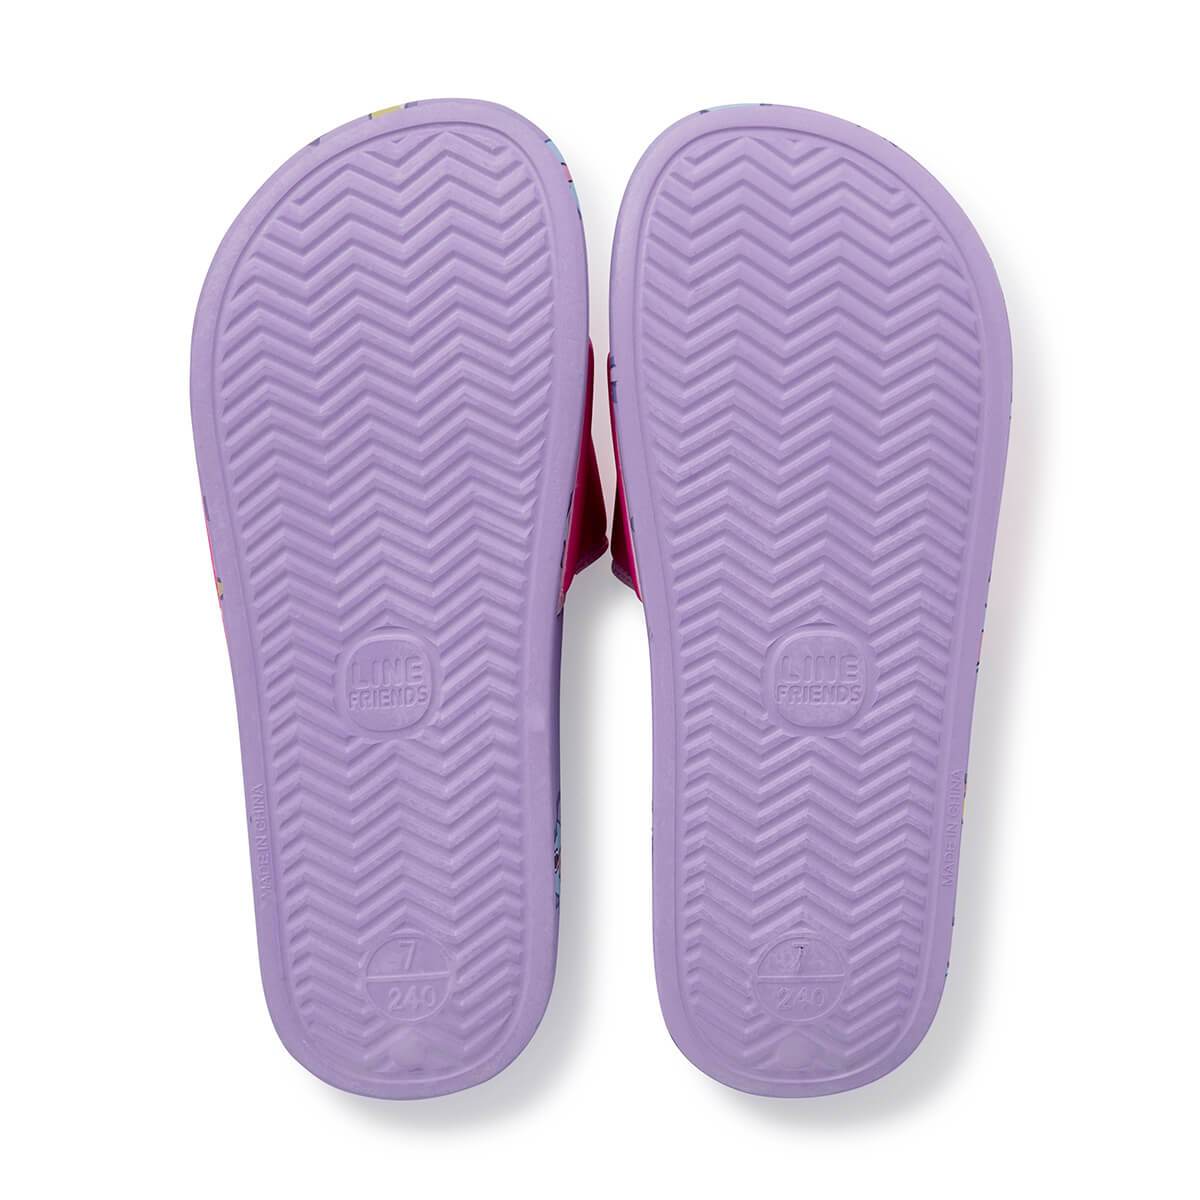 BT21 MANG Velcro slippers